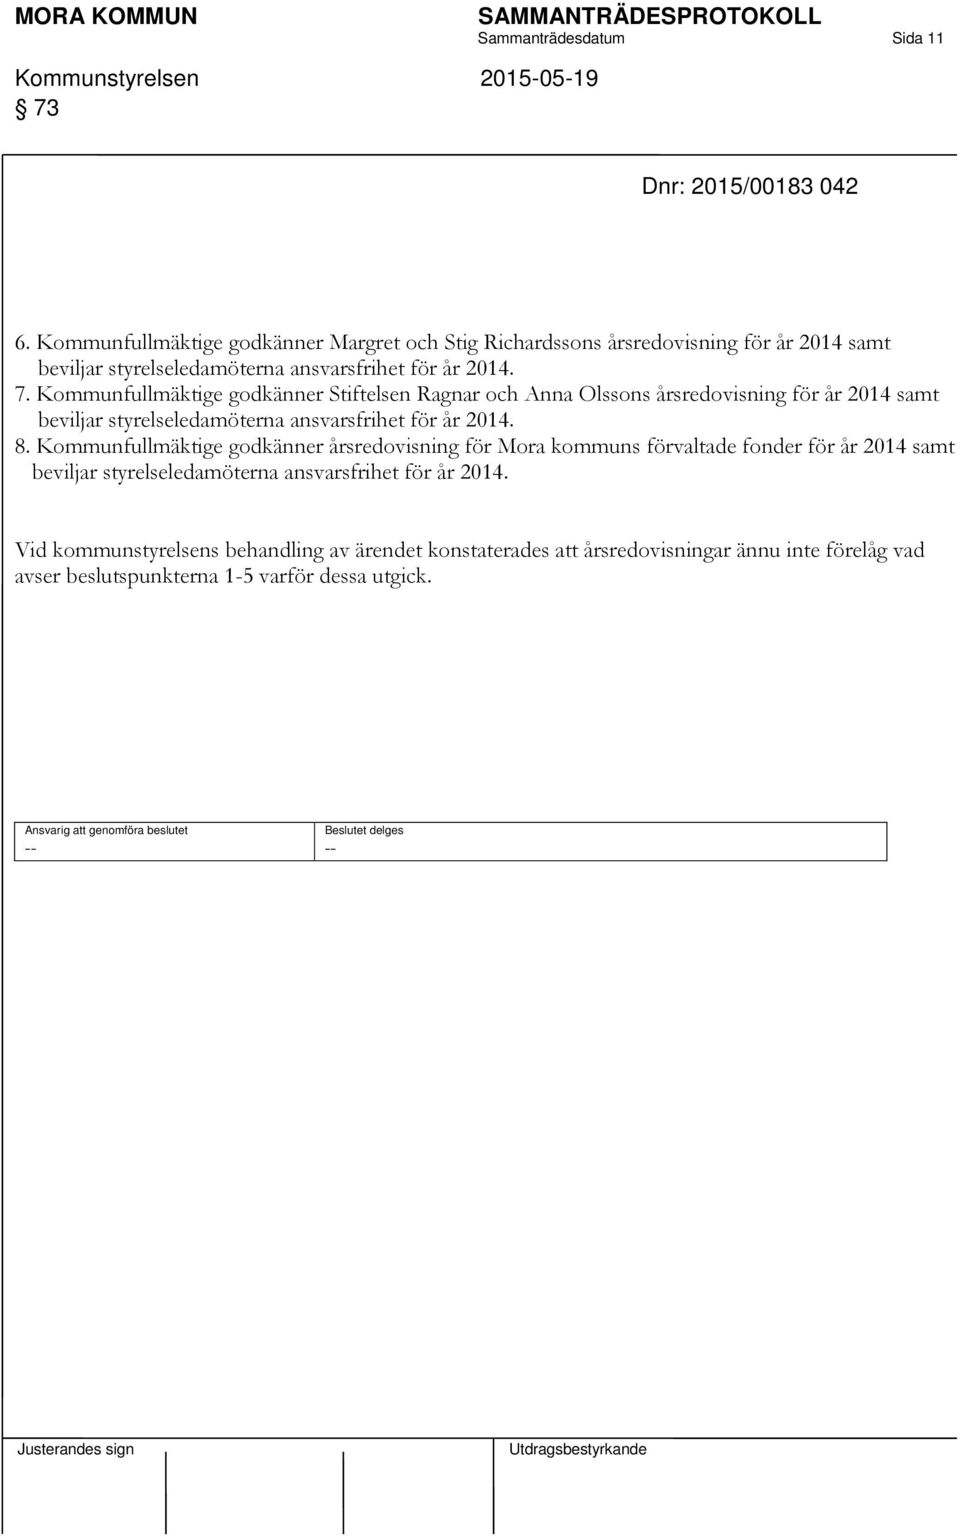 Kommunfullmäktige godkänner Stiftelsen Ragnar och Anna Olssons årsredovisning för år 2014 samt beviljar styrelseledamöterna ansvarsfrihet för år 2014. 8.